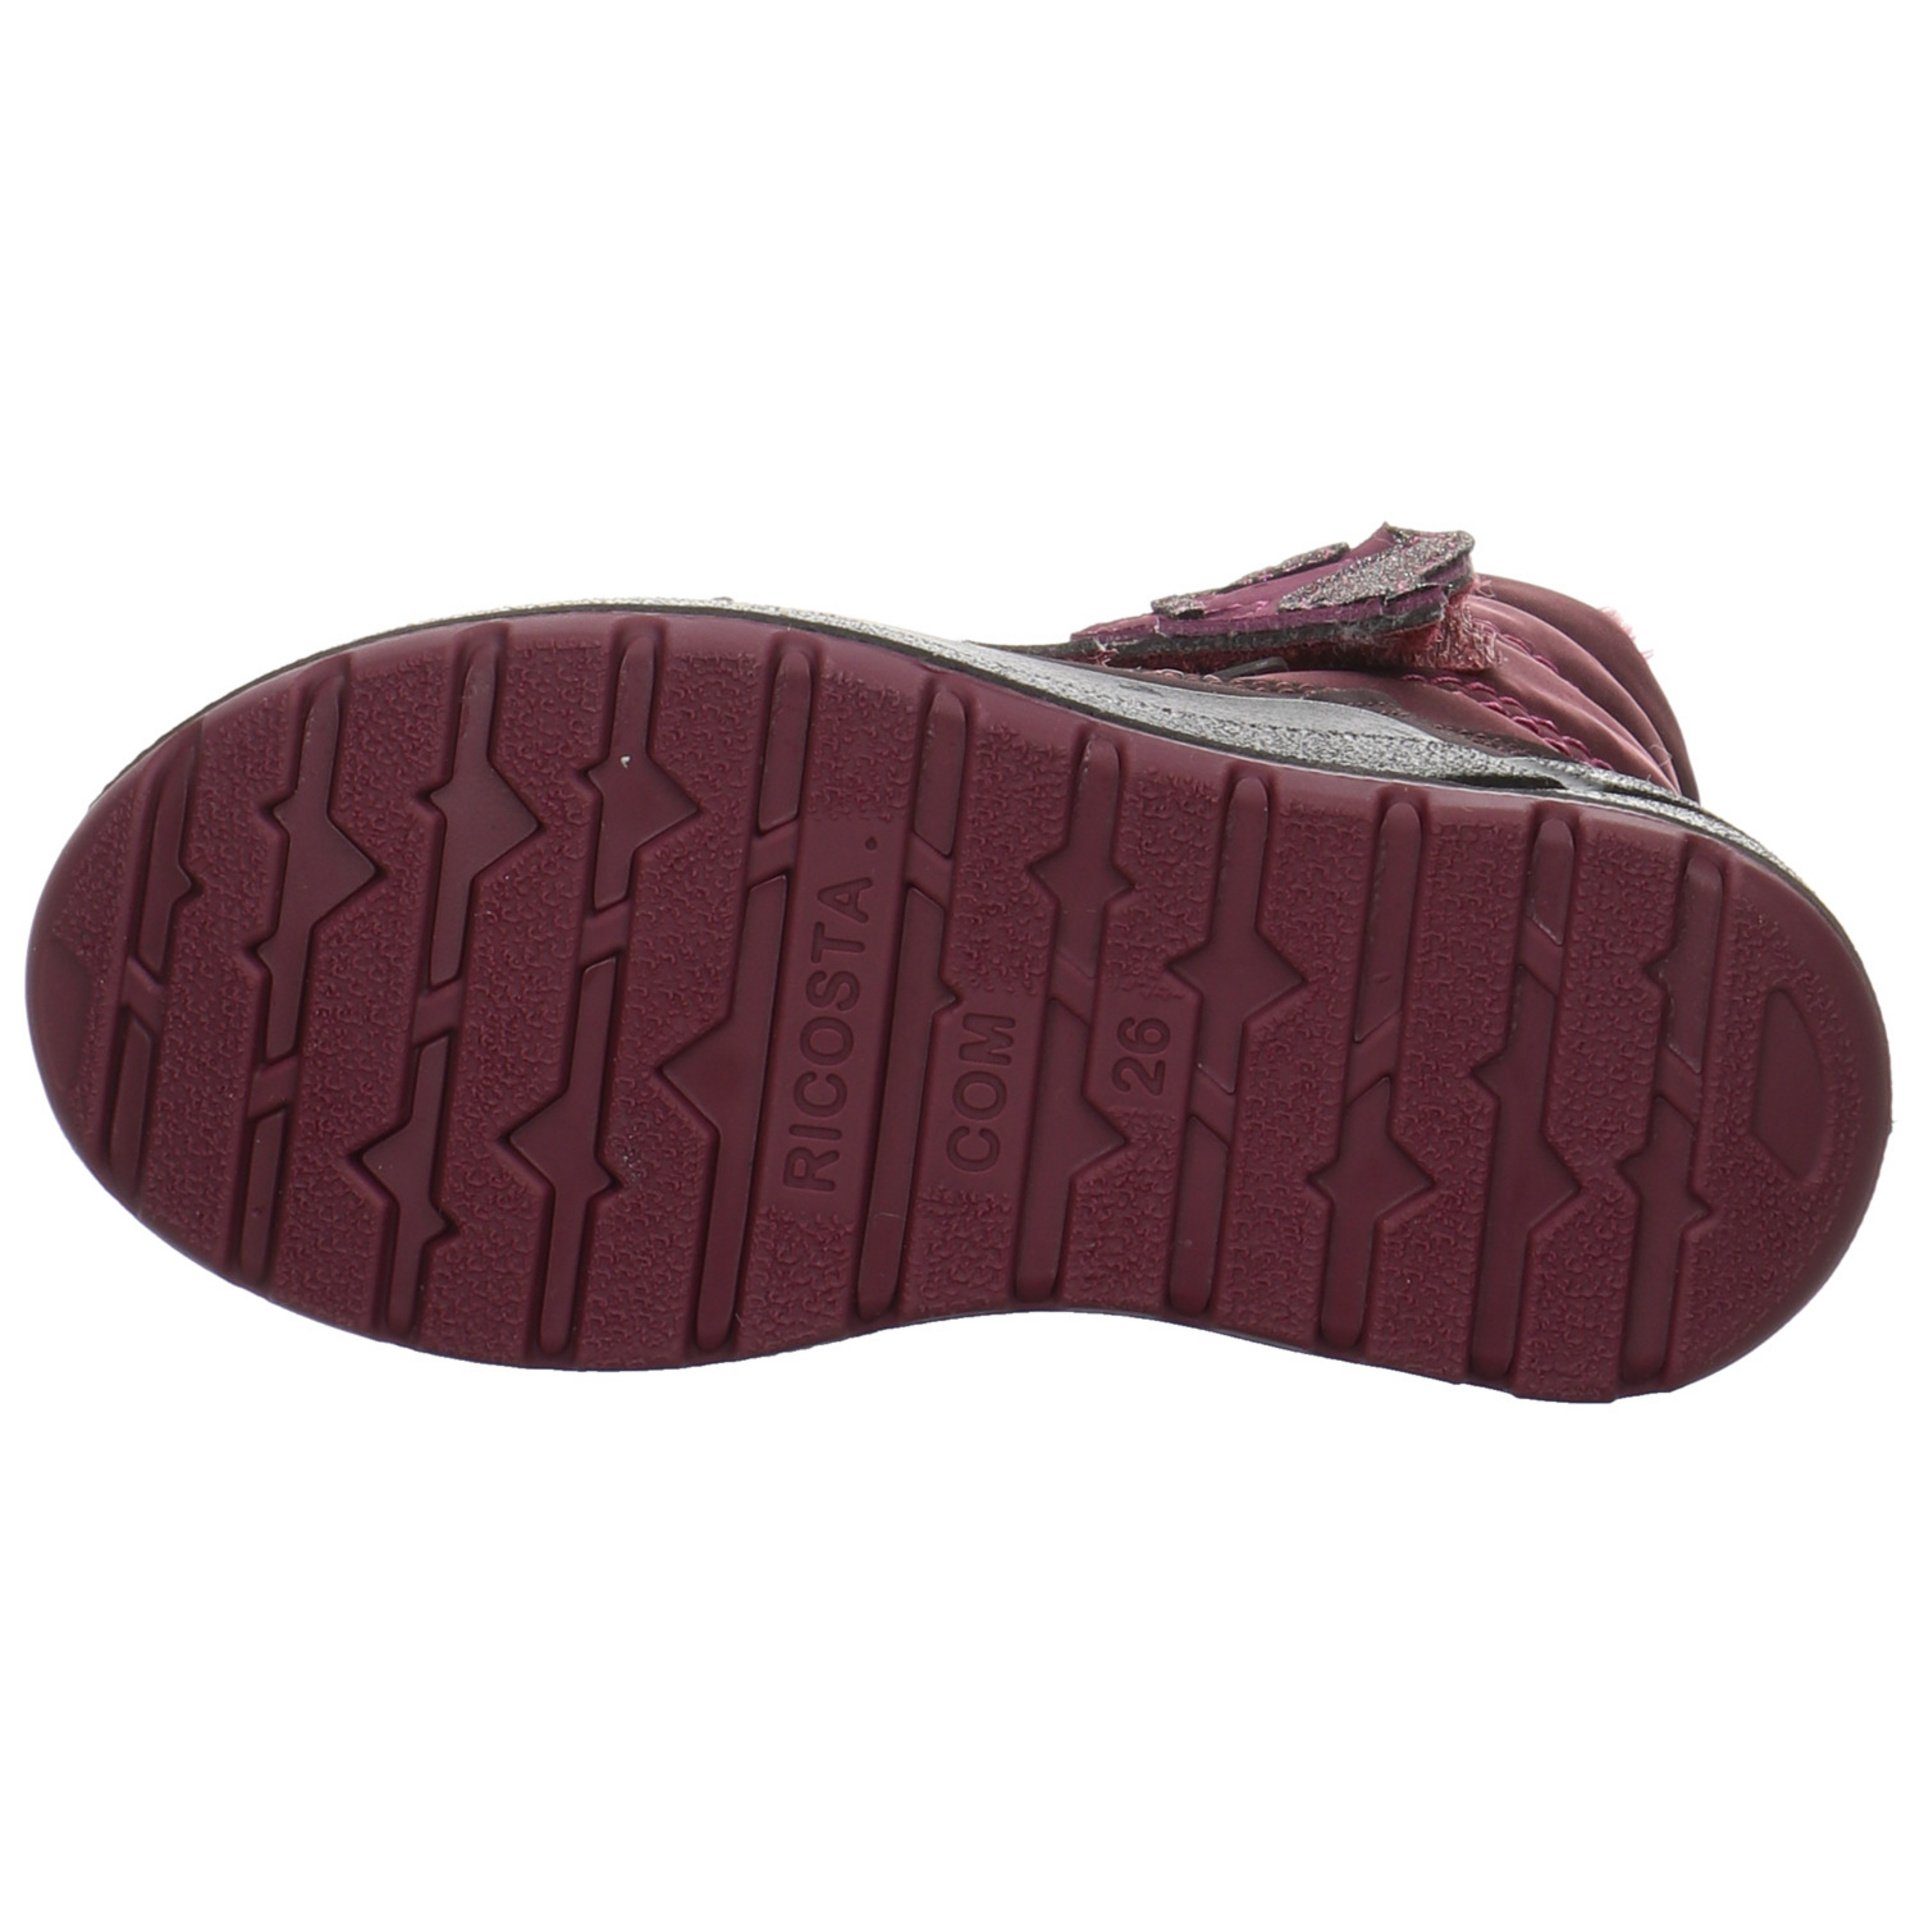 Textil Stiefel Bordeaux Garei Boots Textil uni Ricosta